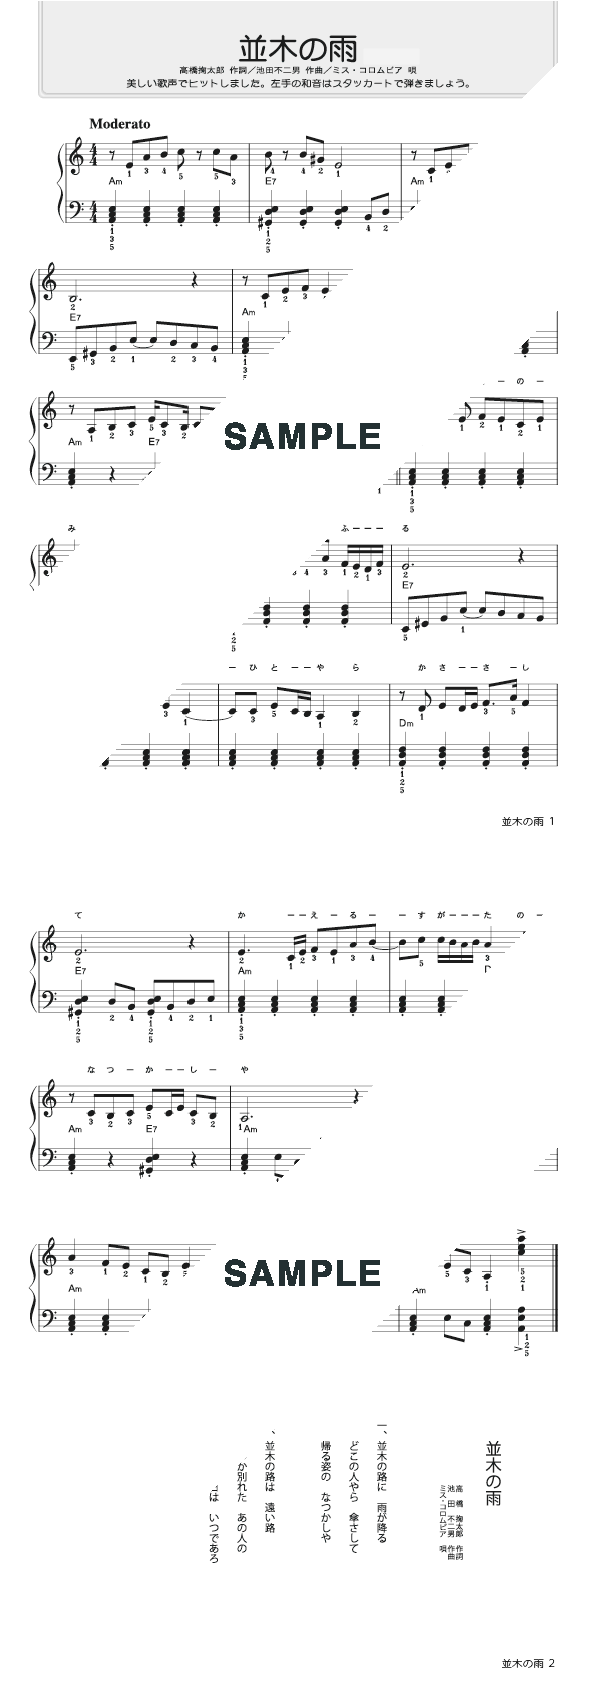 楽譜 並木の雨 ミス コロムビア ピアノ ソロ譜 初級 提供 タイムリーミュージック 楽譜 Elise